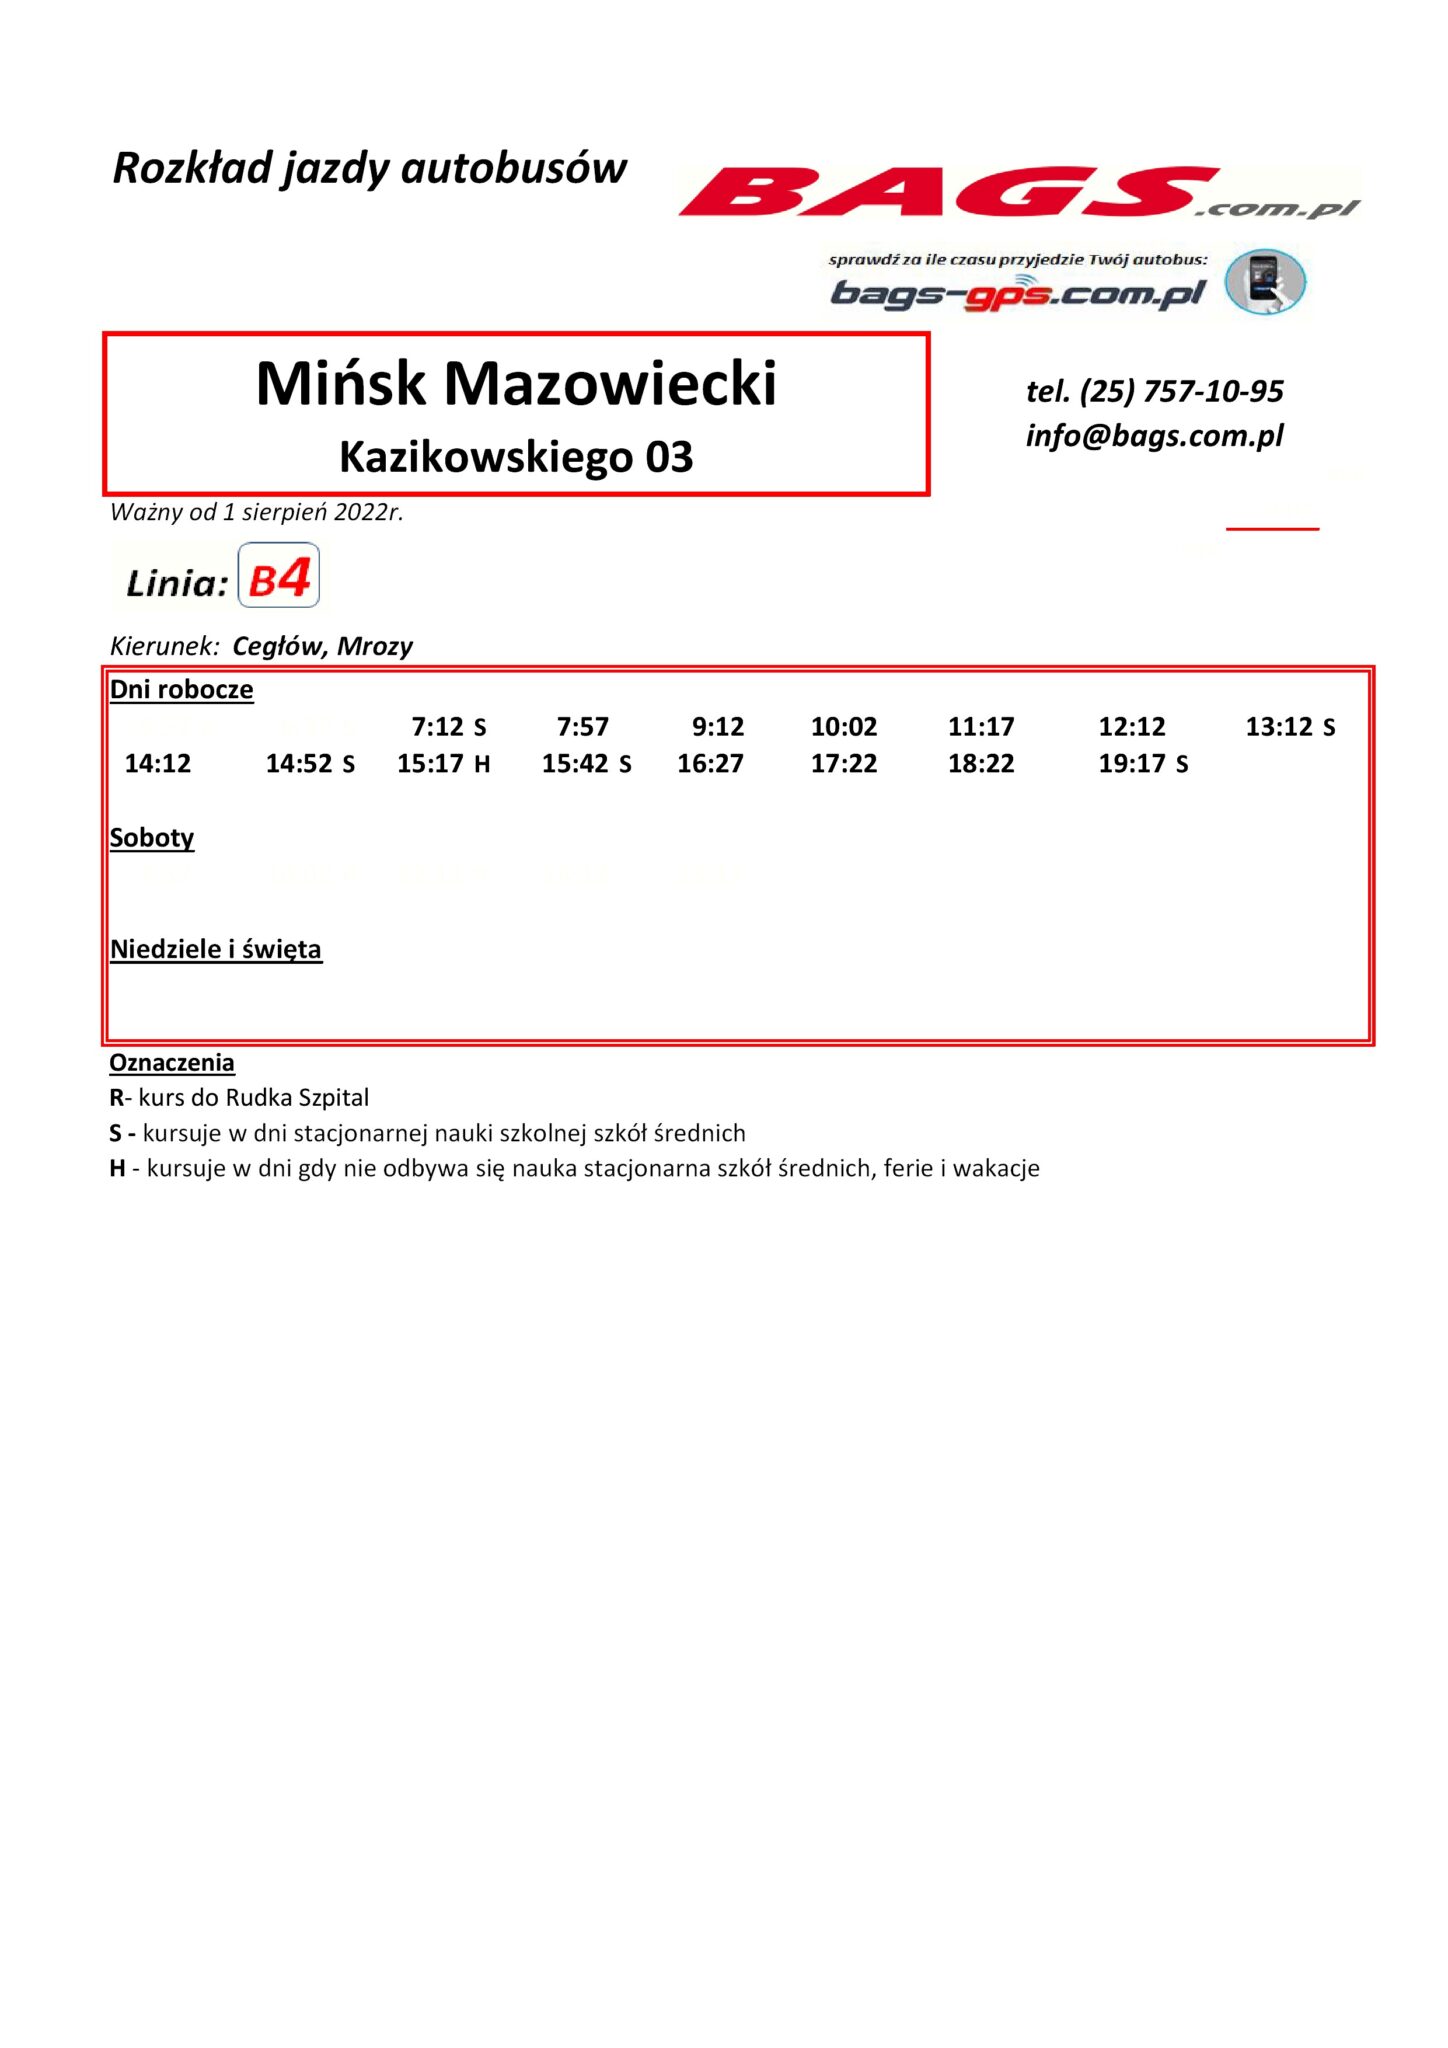 Minsk-Maz.-Kazikowskiego-03-1-1-1448x2048